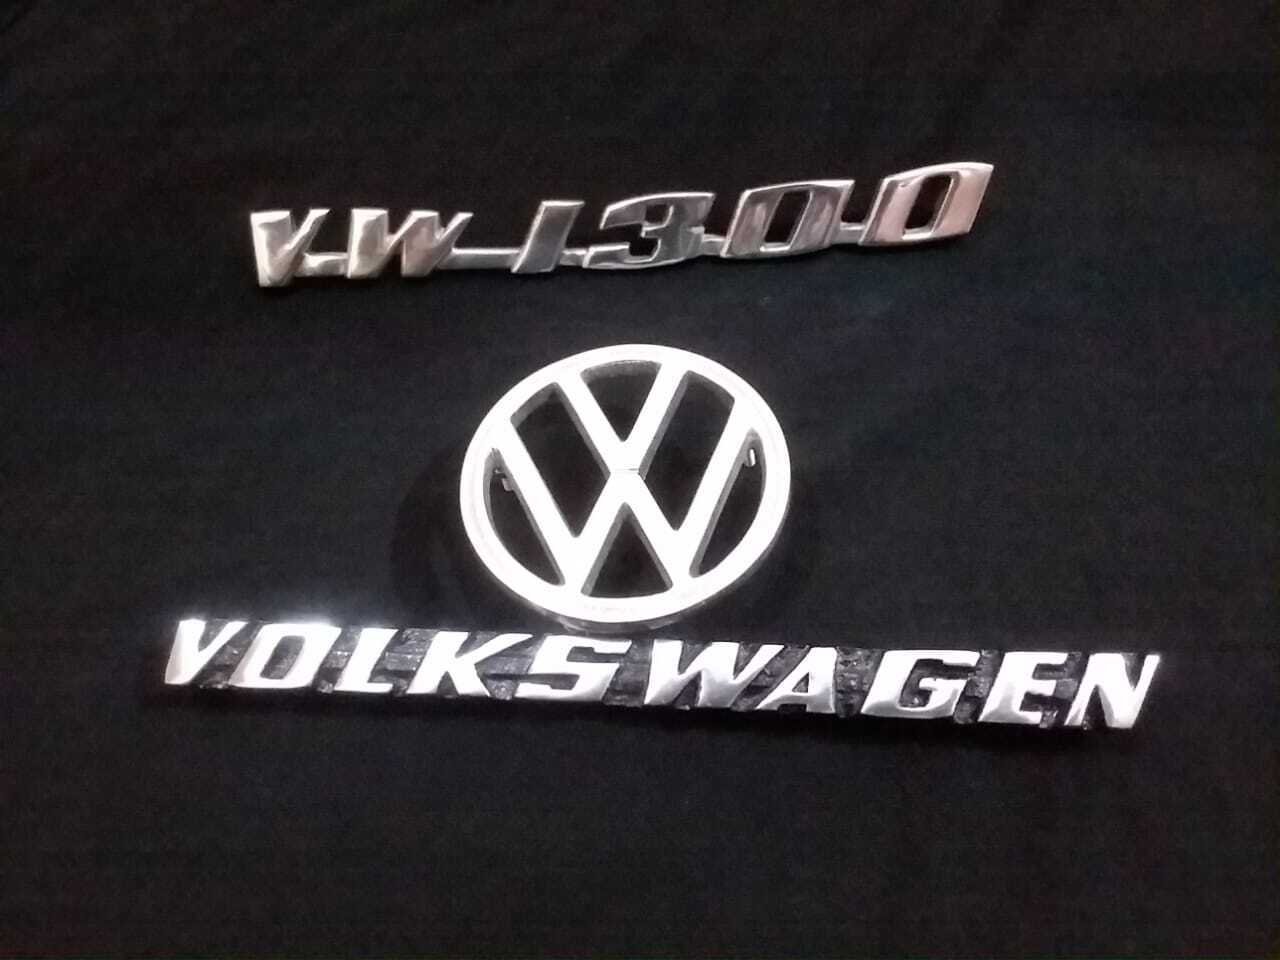 VOLKSWAGEN VW 1300 Digi Emblems With VOLKSWAGEN VW Bonut Emblem 3 Piece Set